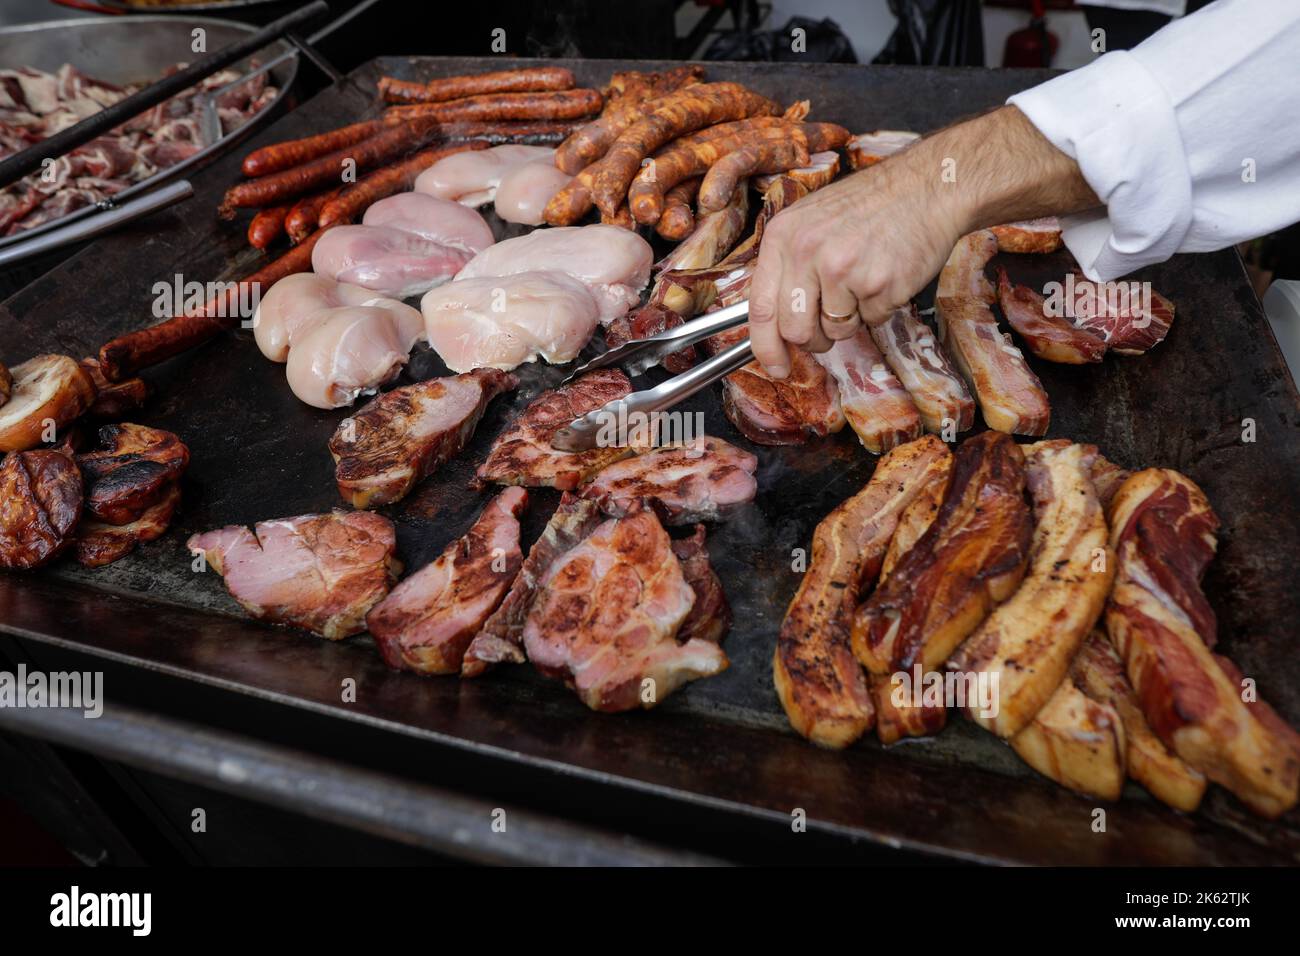 Profondeur de champ peu profonde (mise au point sélective) détails avec un homme griller différents types de viande (porc, poulet, saucisses) sur une plaque chauffante métallique. Banque D'Images